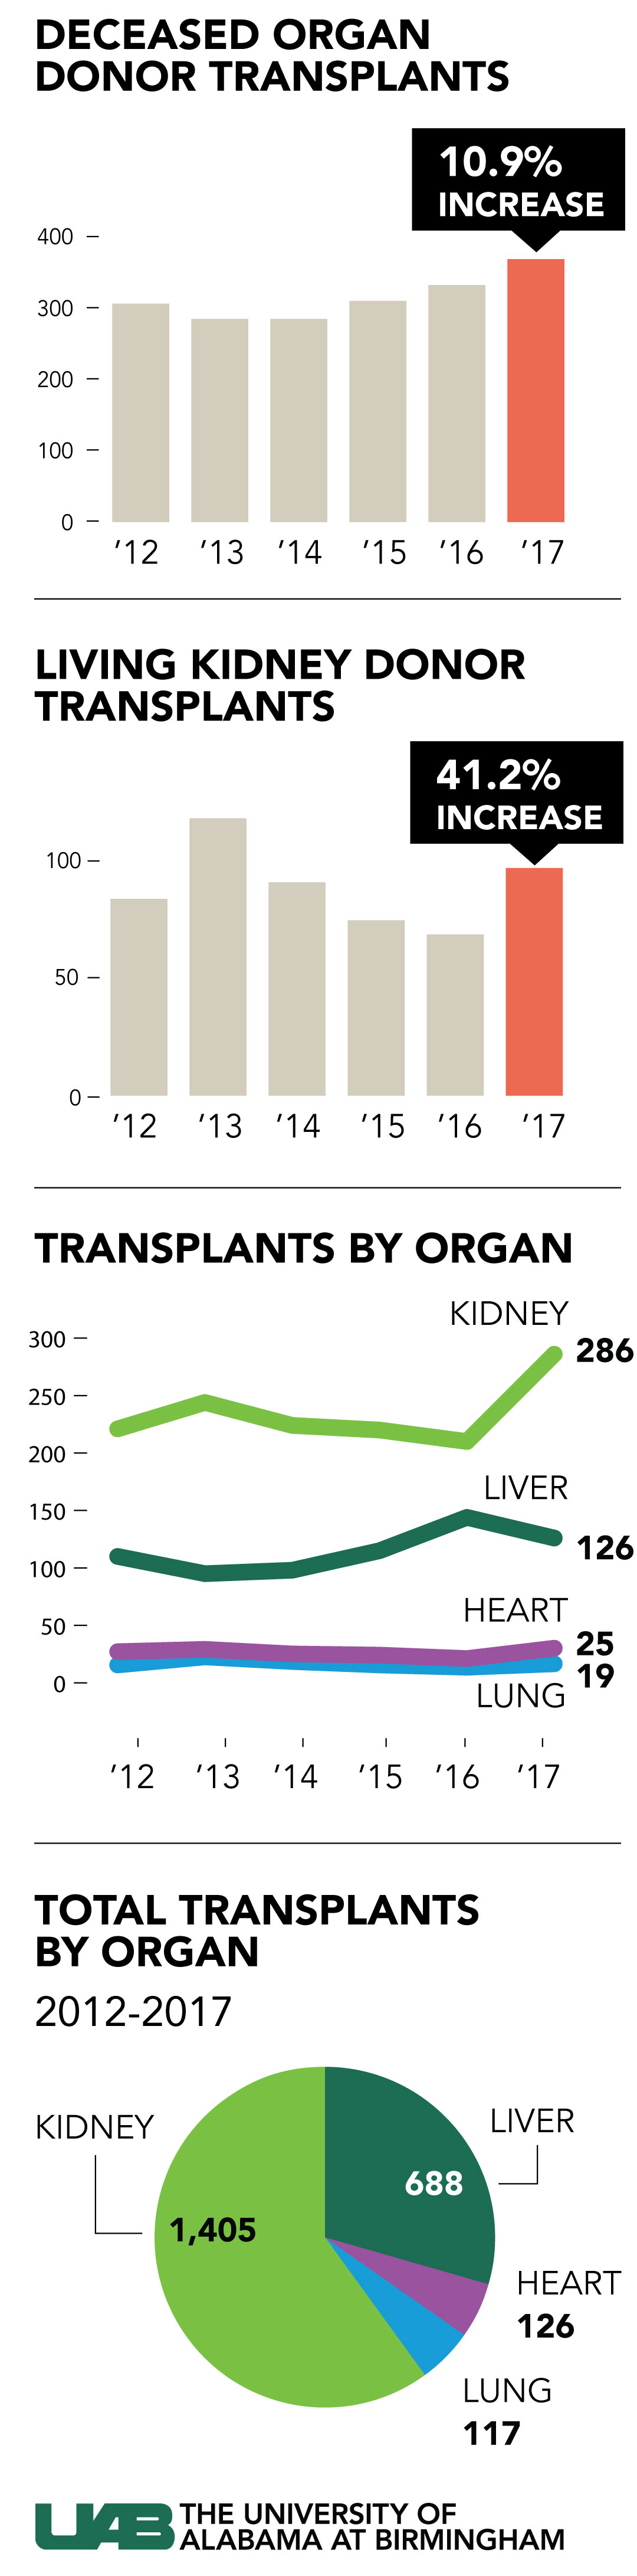 transplants 2012 2017 final